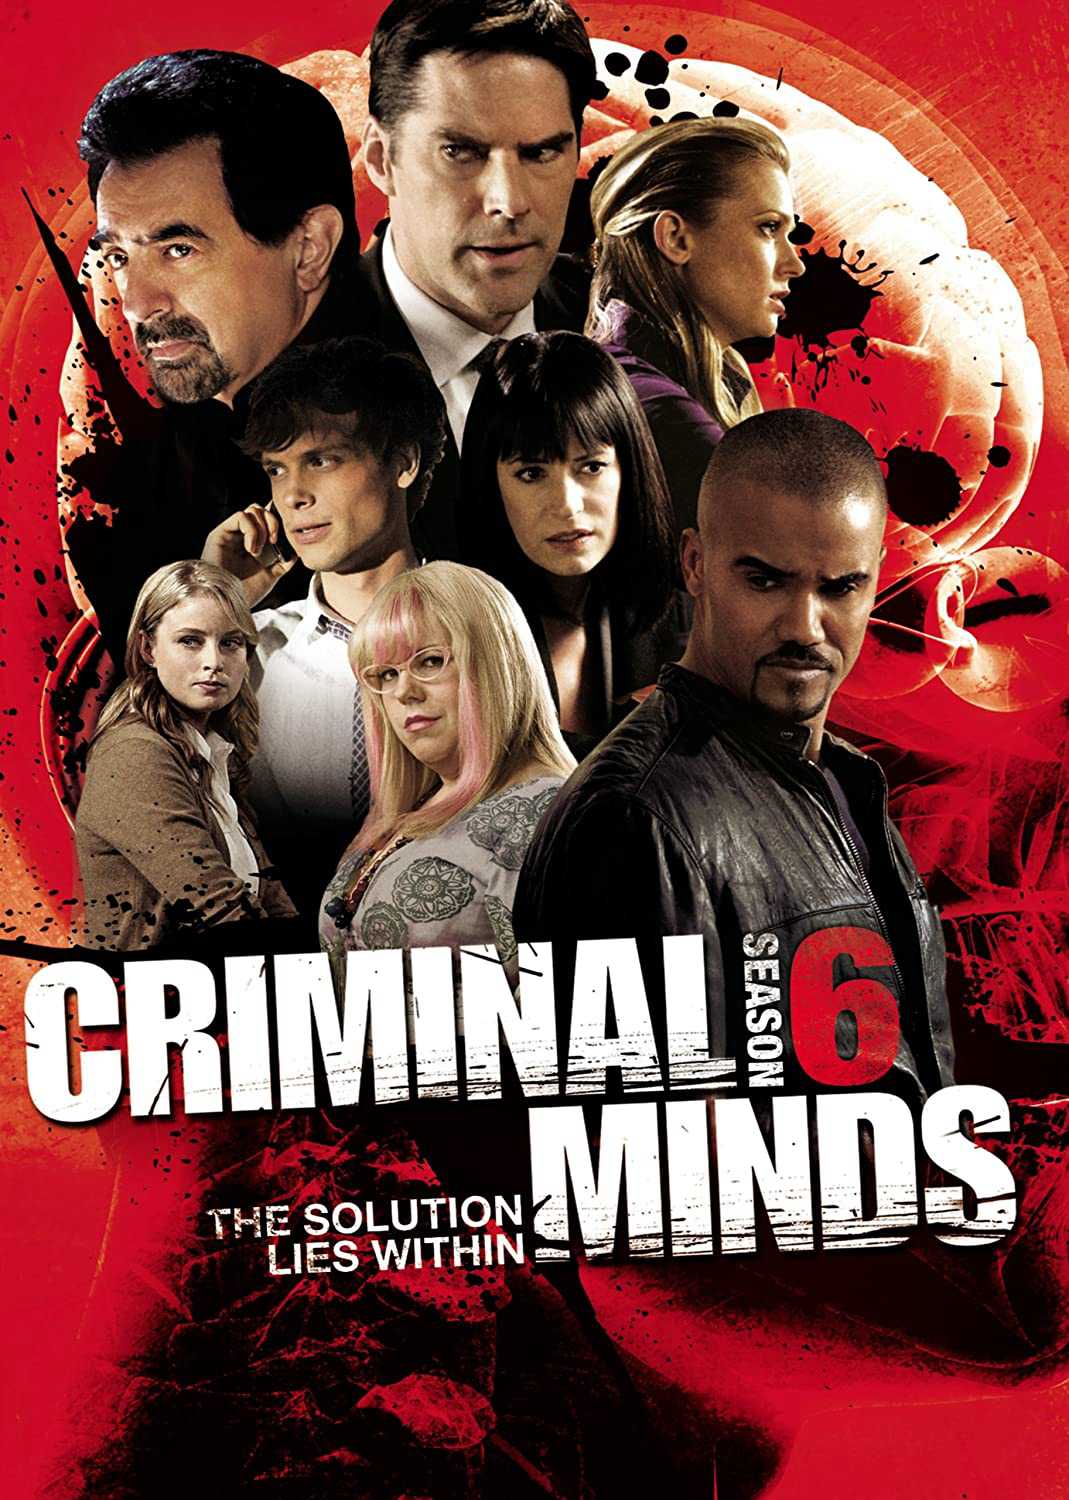 Hành vi phạm tội (phần 6) - Criminal minds (season 6)